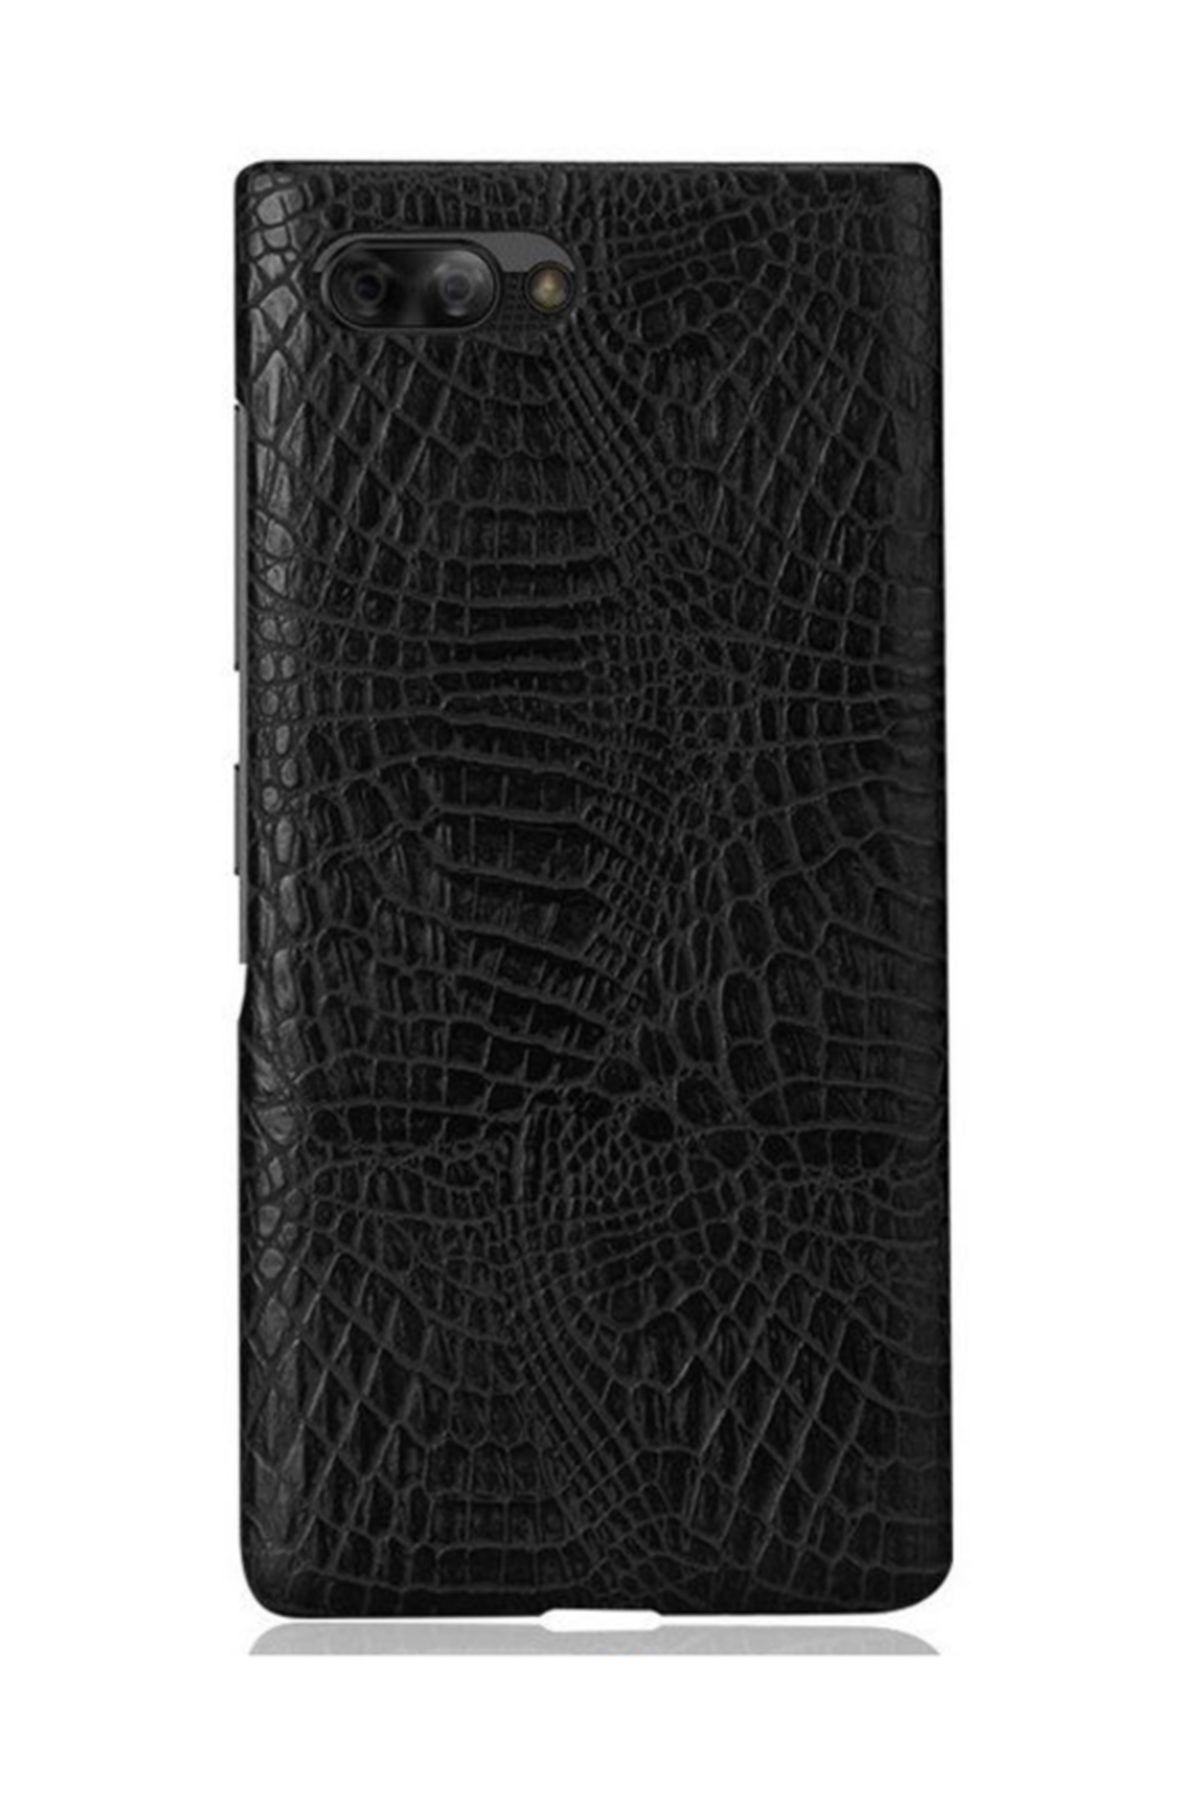 Microcase Blackberry Key2 Crocodile Timsah Deri Kaplama Sert Rubber Kılıf - Siyah